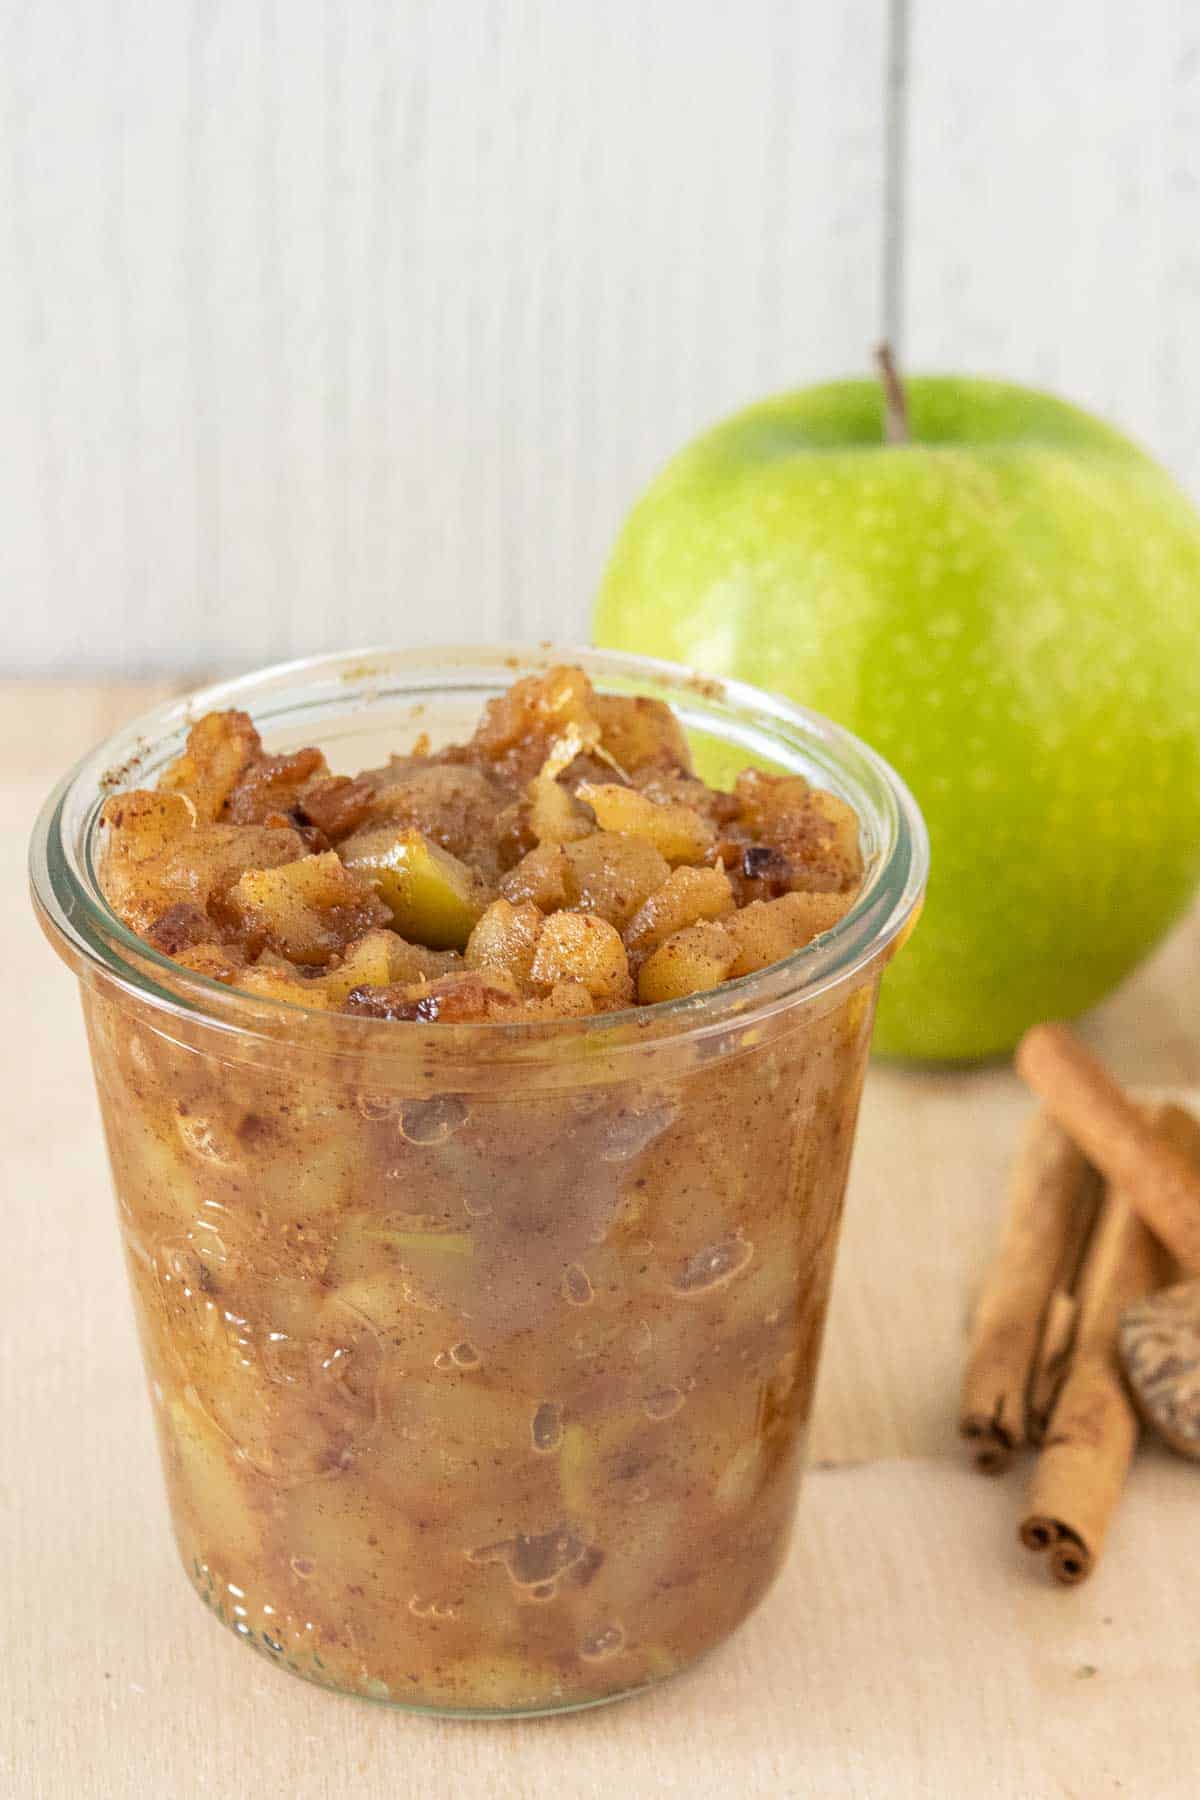 Jar of apple compote with ingredients behind.